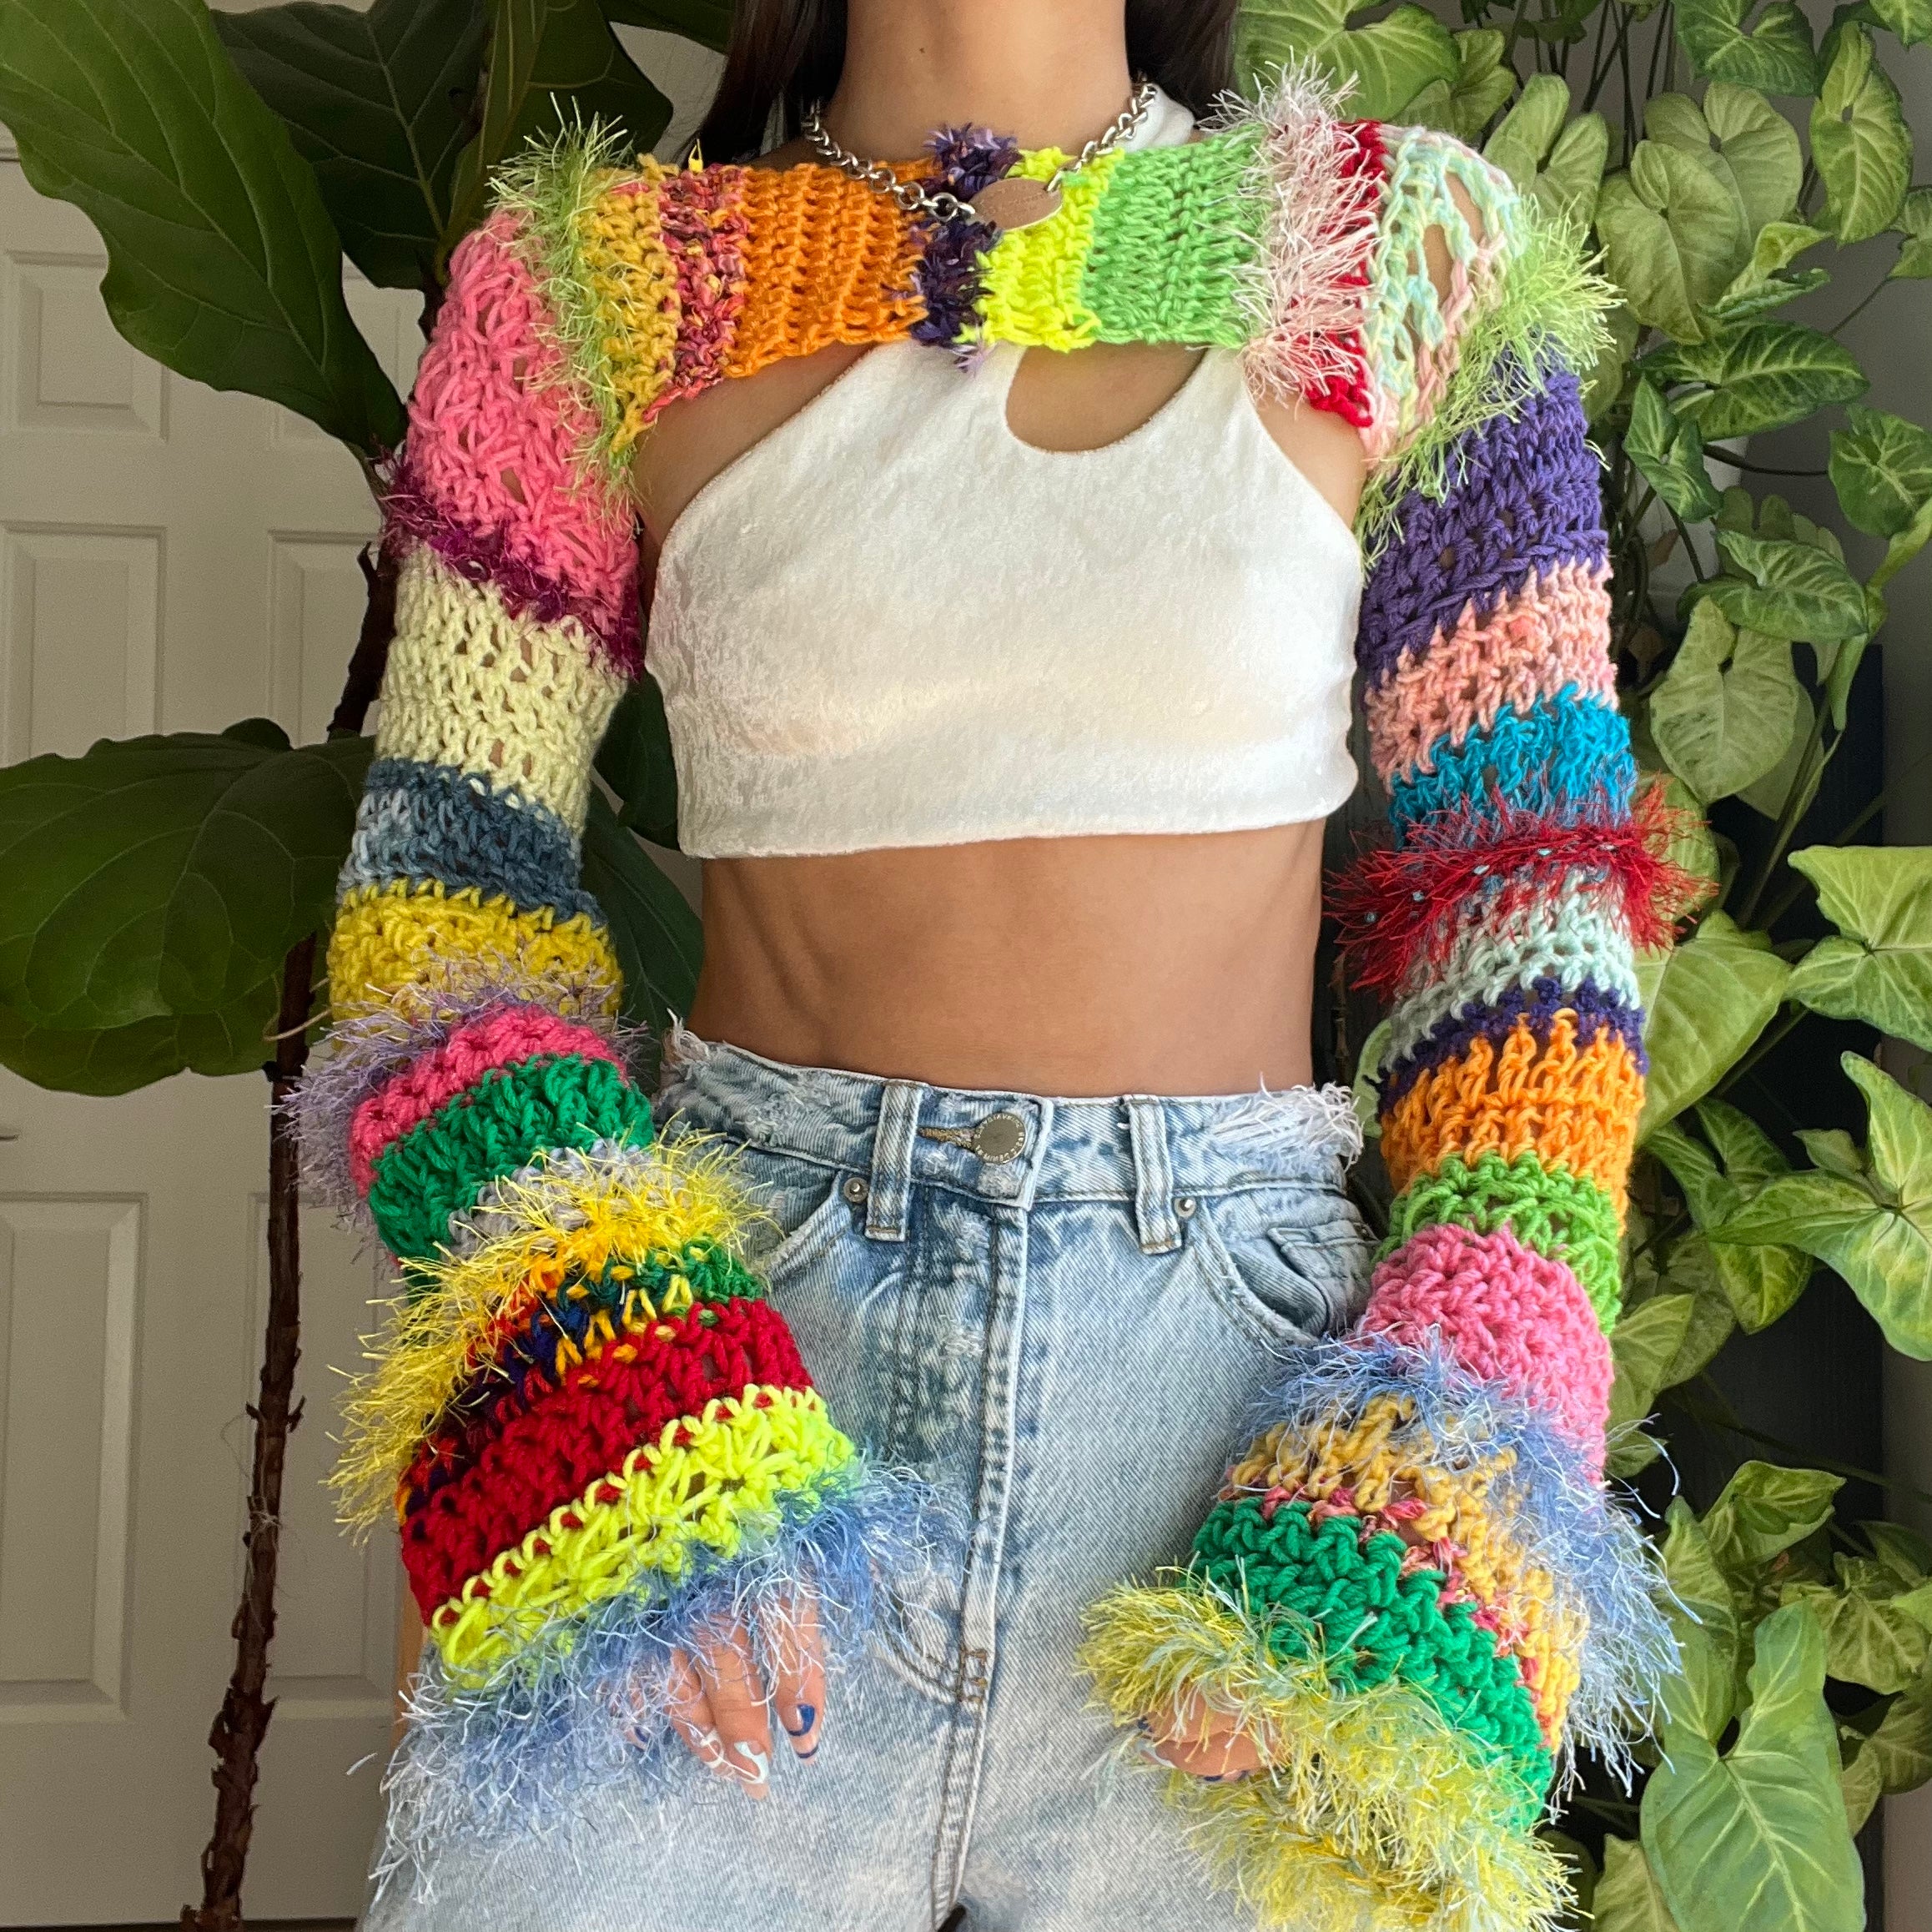 Rainbow Crocheted Shrug Bolero V7